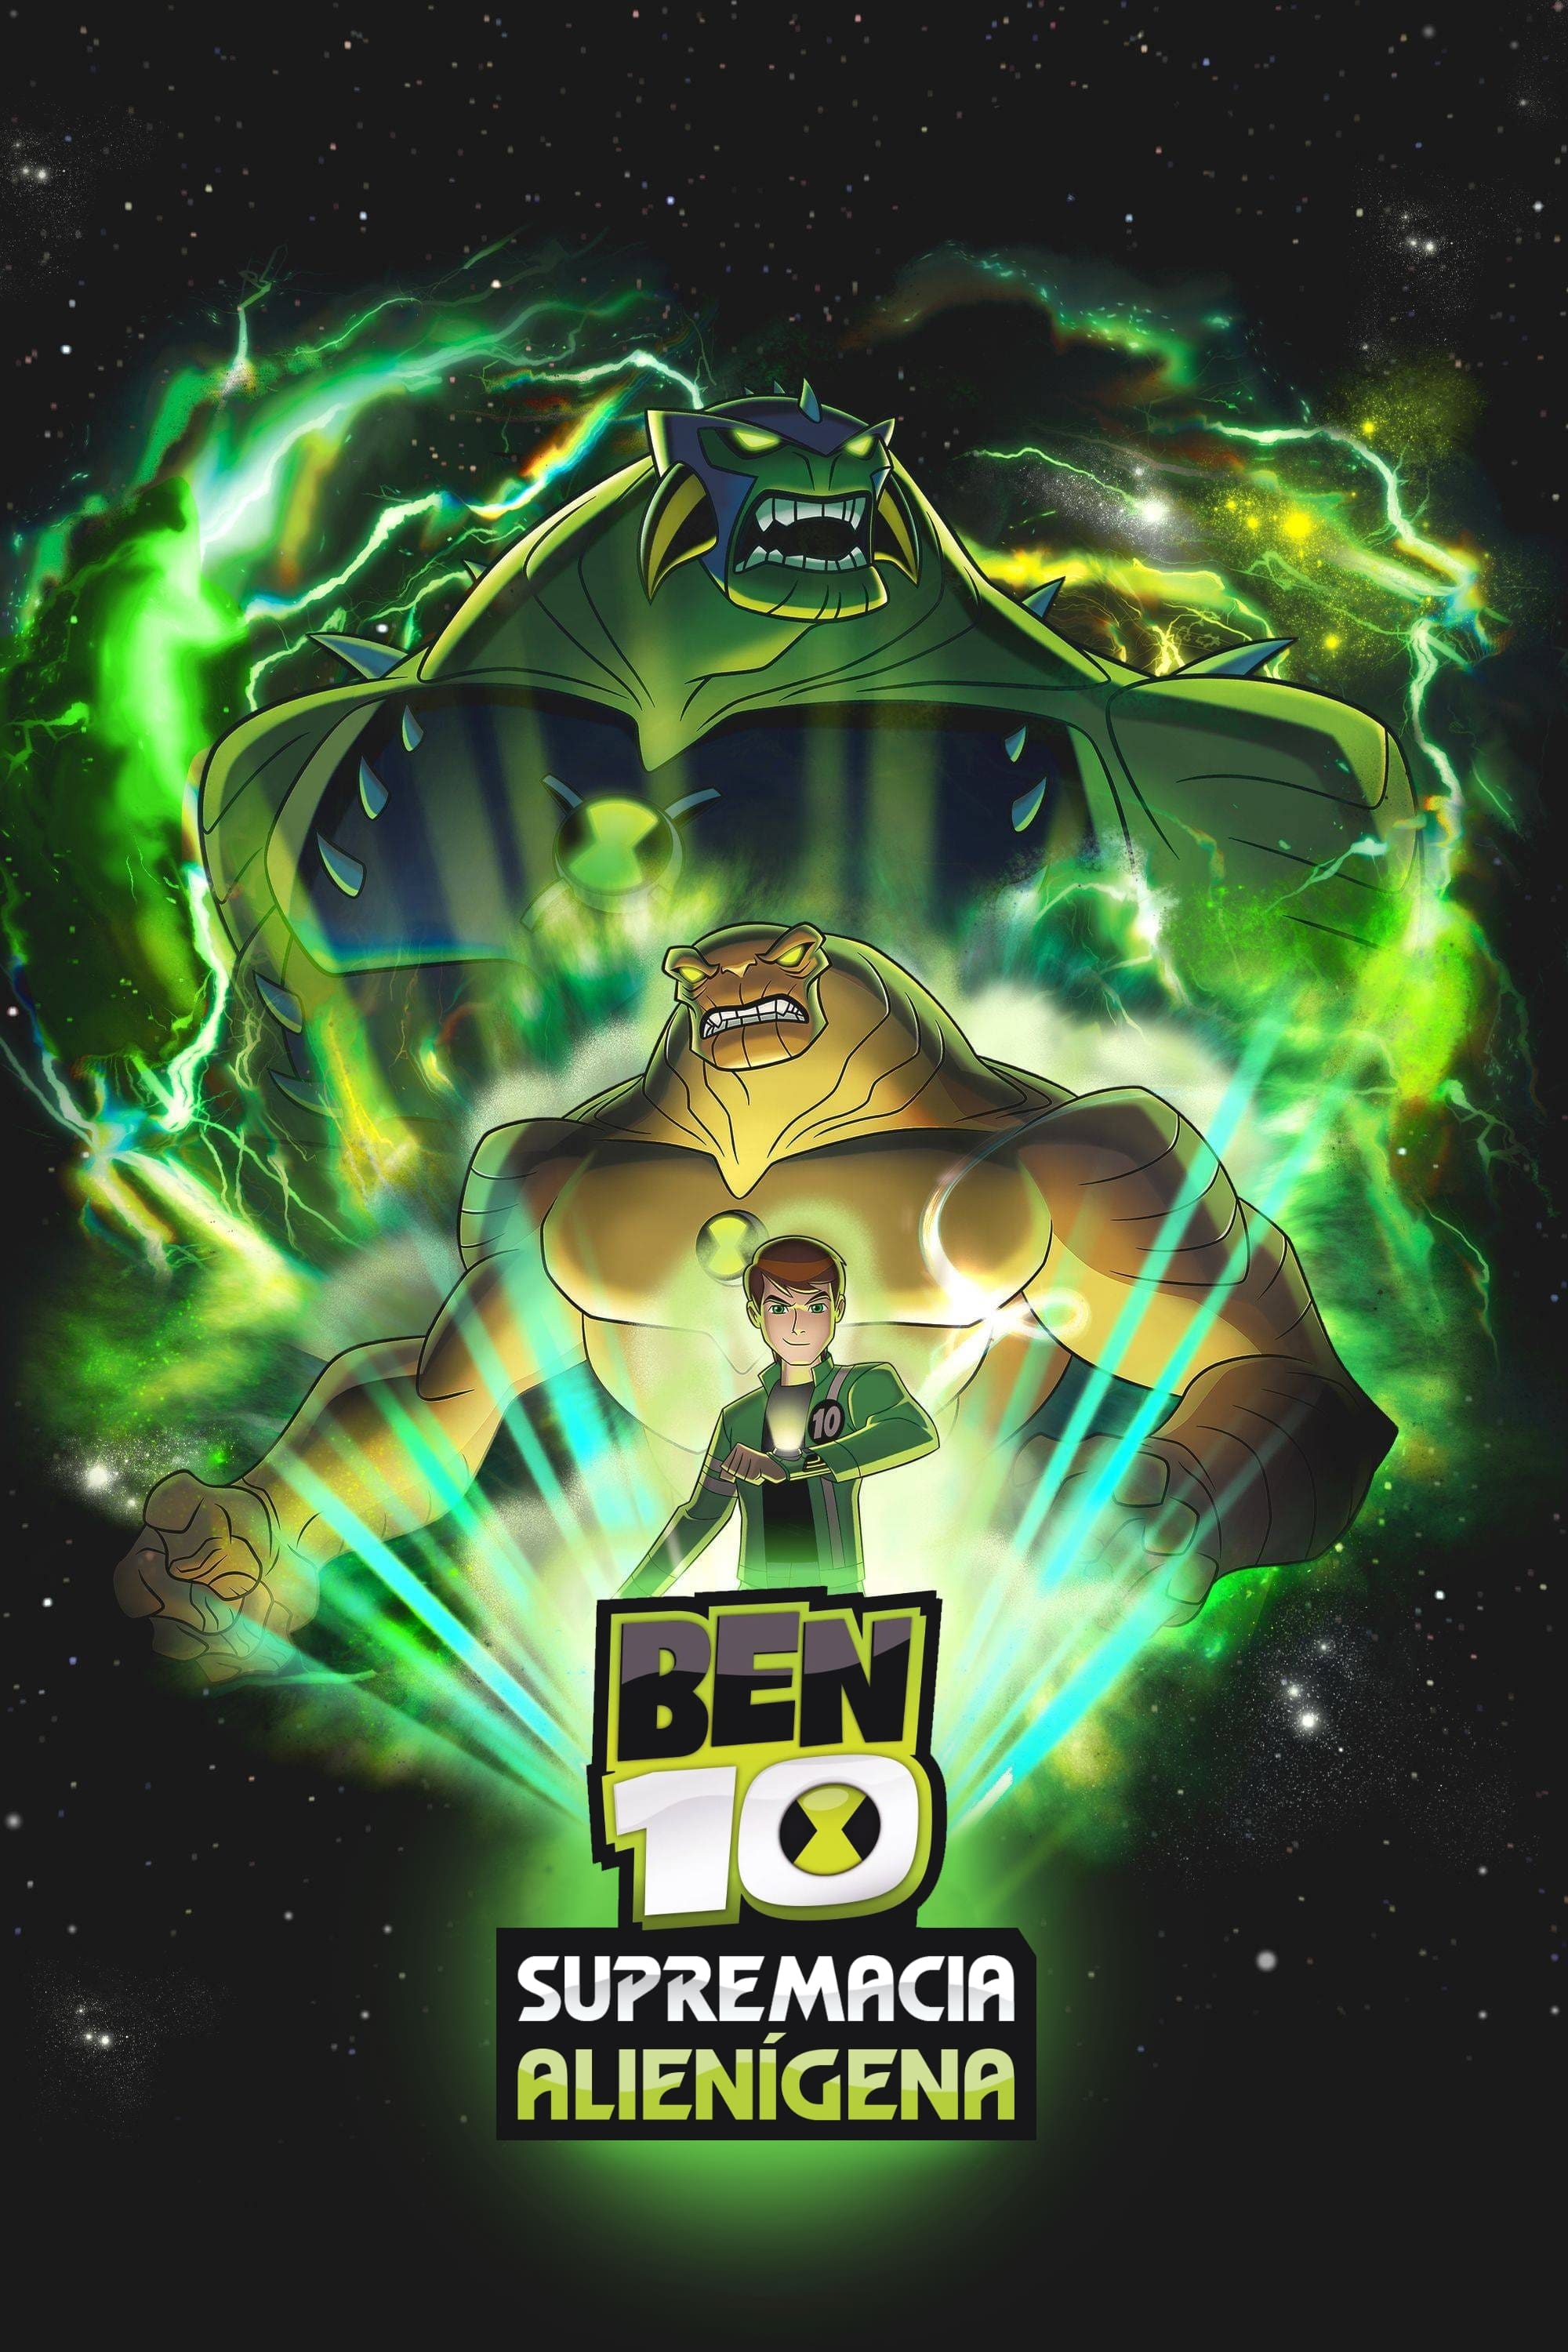 Ben 10 Supremacia Alienígena: Defensor Supremo, Universo Ben 10